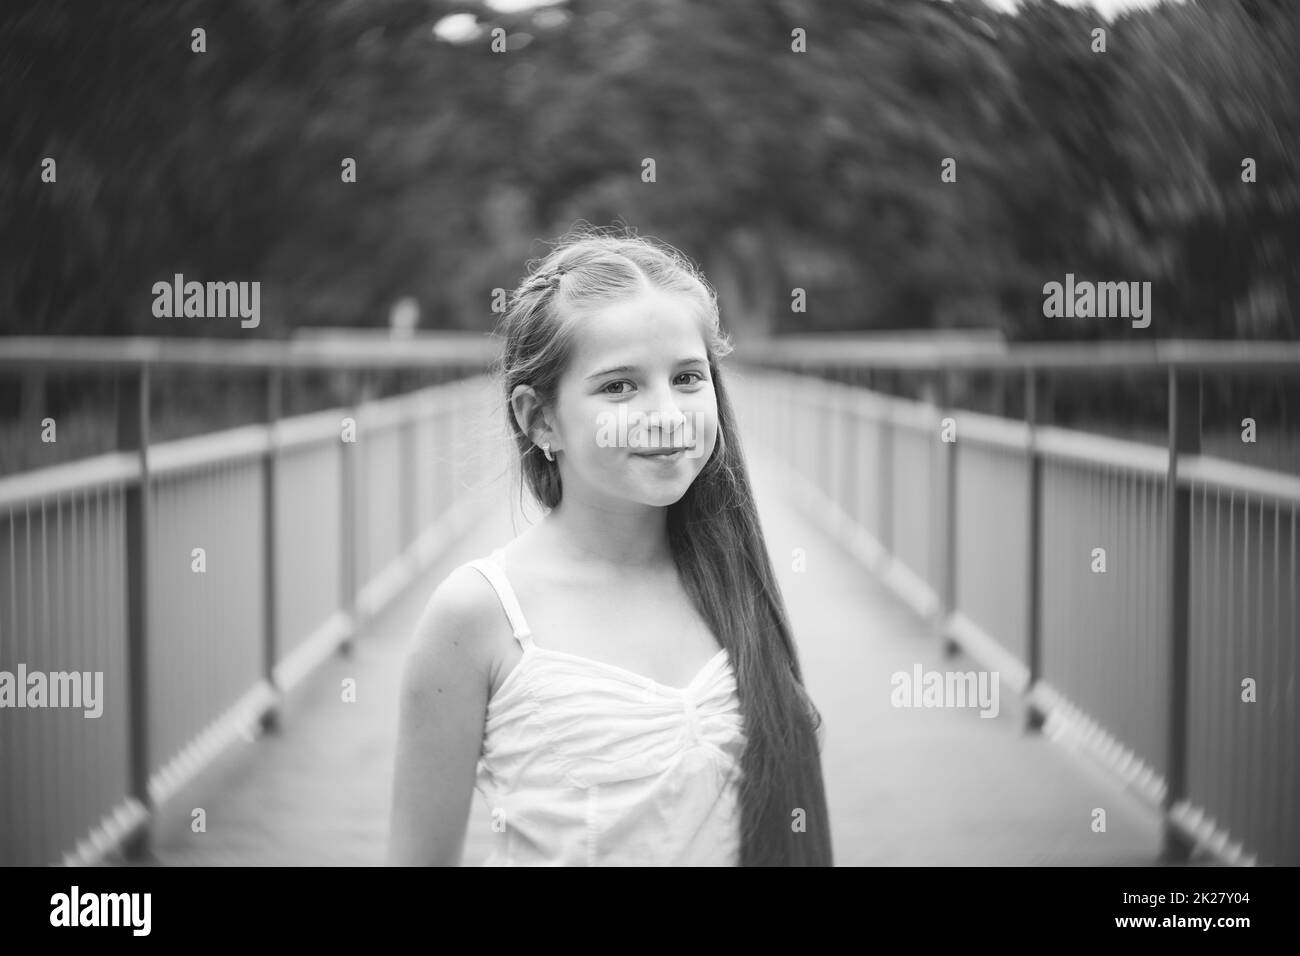 Portrait d'une belle fille avec de longs cheveux debout sur un pont. Noir et blanc. Banque D'Images